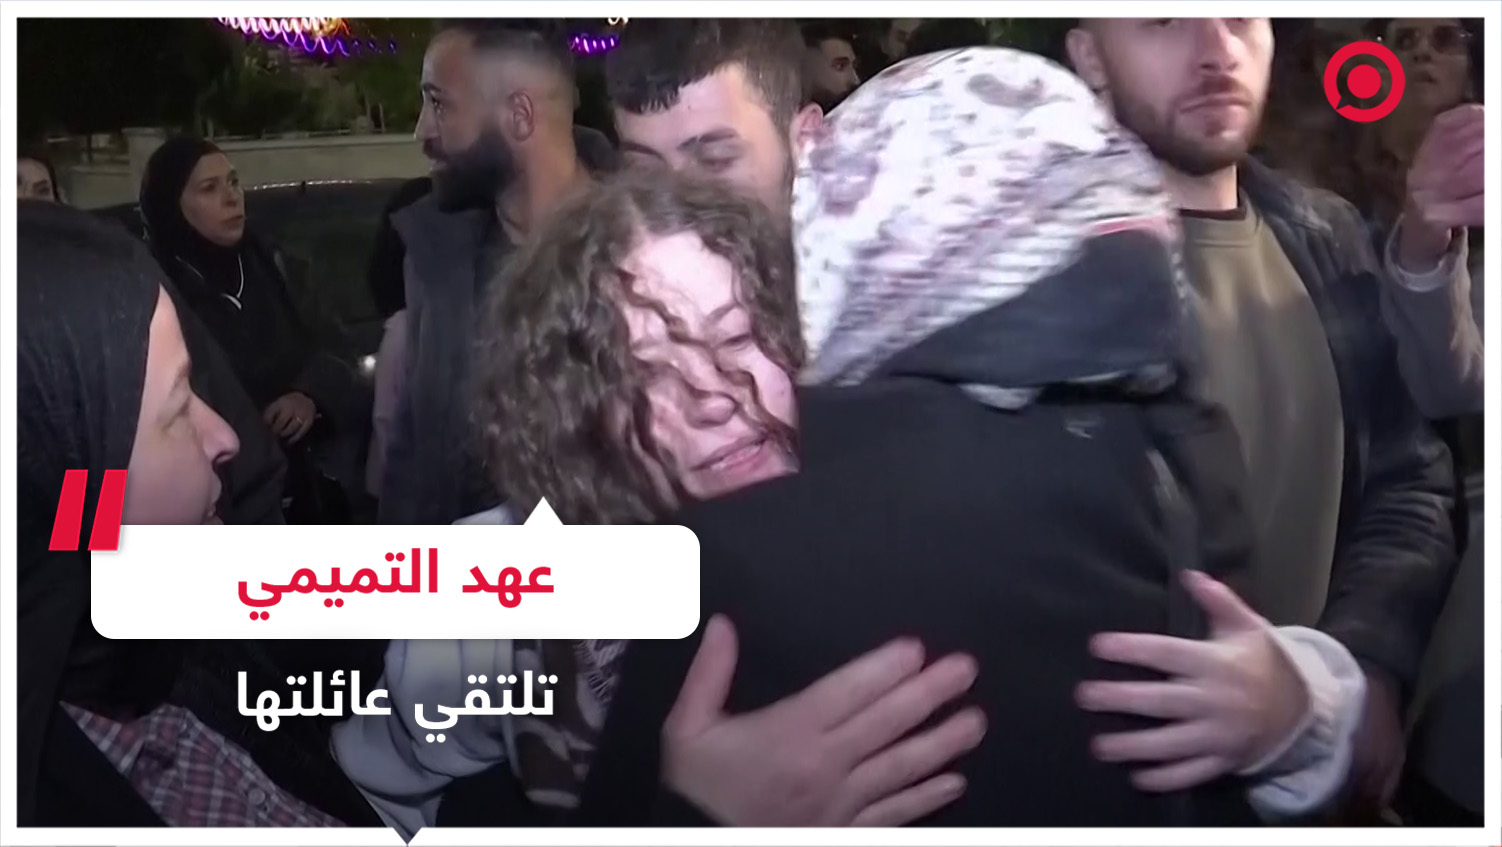 الناشطة الفلسطينية عهد التميمي تلتقي أهلها بعد الإفراج عنها